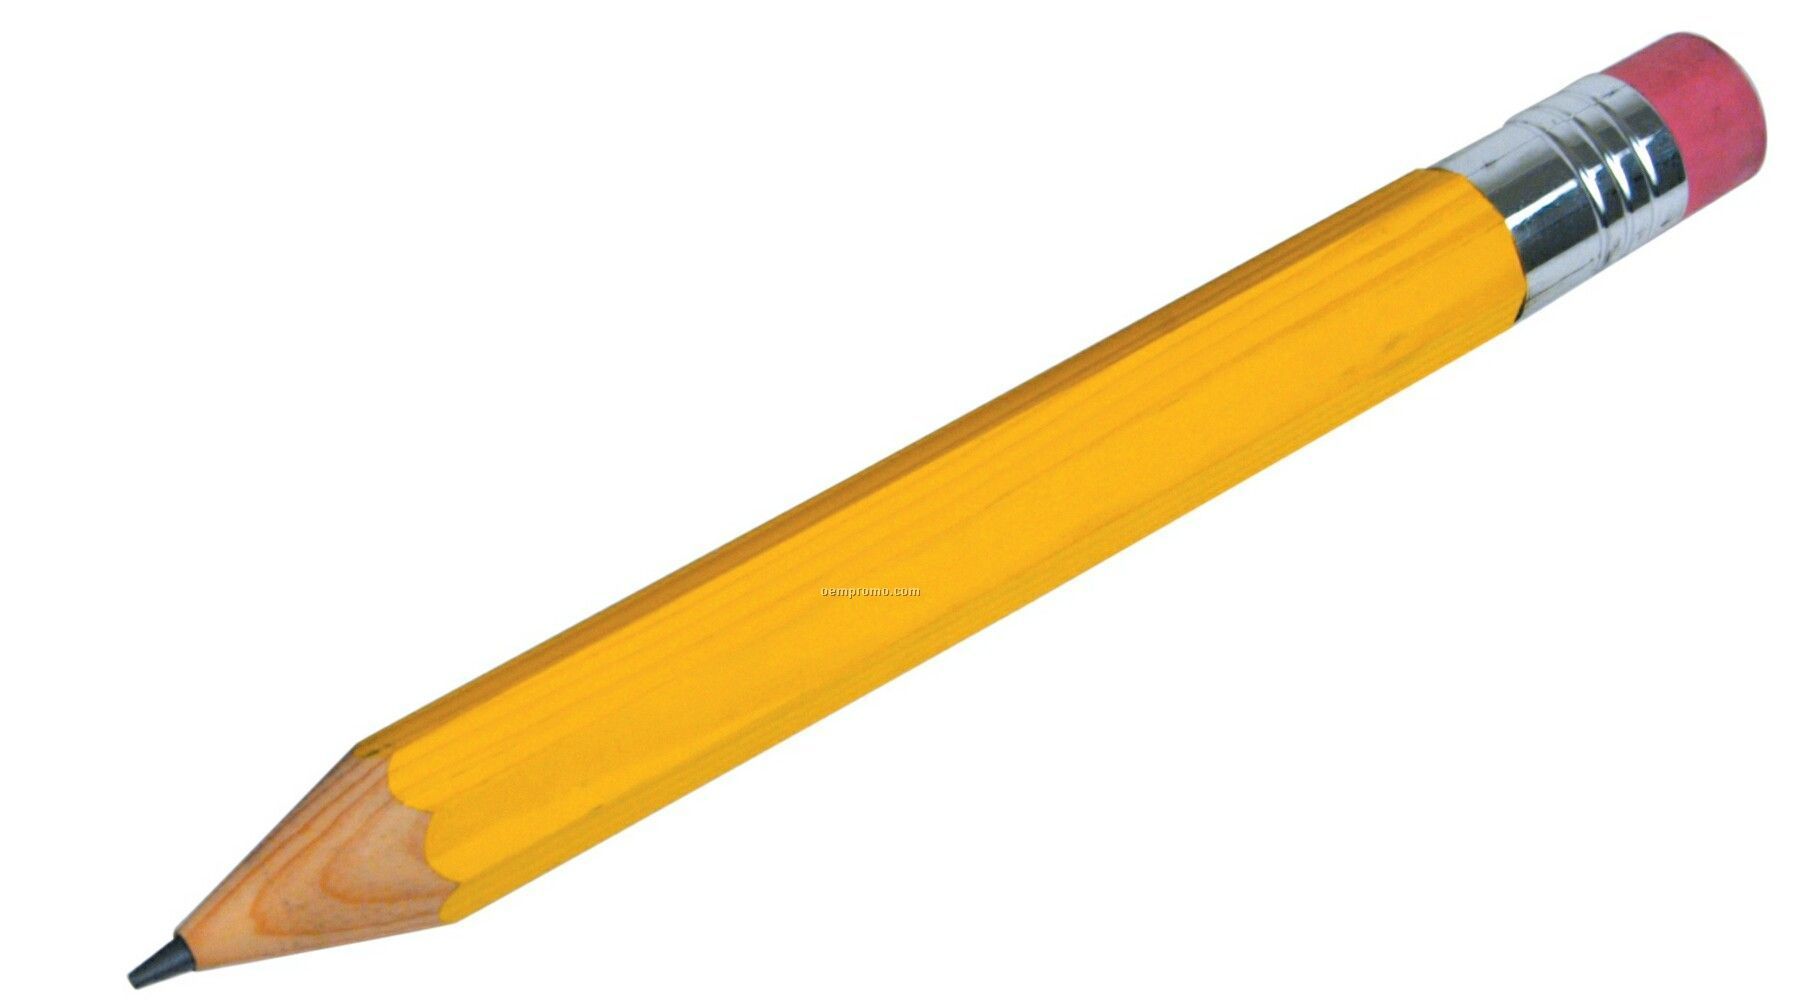 بکگراند جذاب از مداد سیاه با روکش زرد و قشنگ همراه با پاکن 